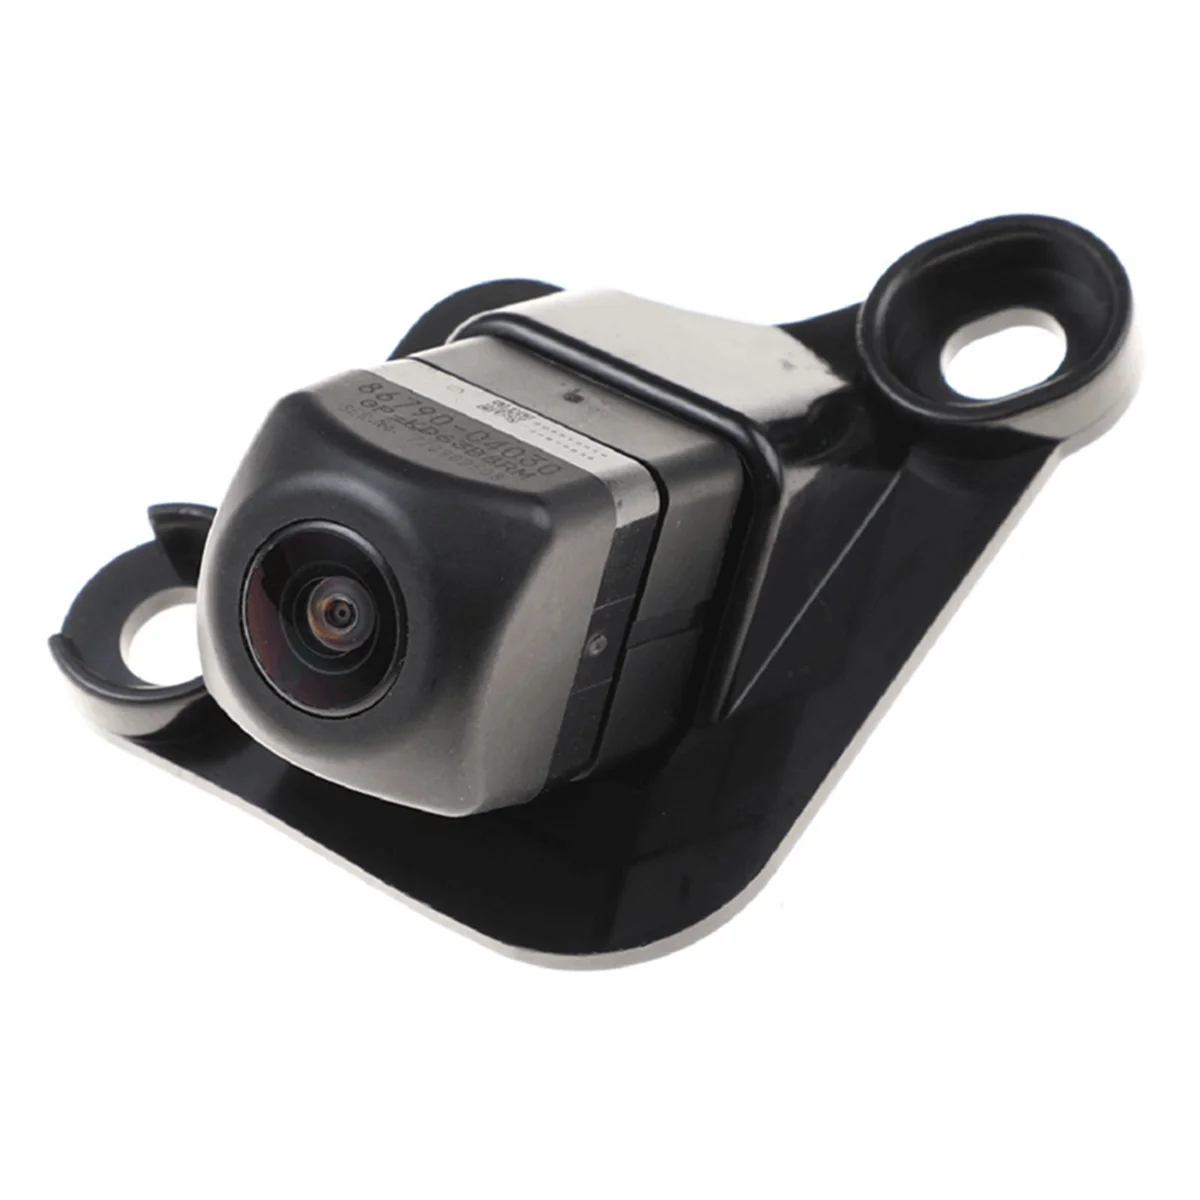 Резервная парковочная камера заднего вида, парковочная камера для Toyota Tacoma, камера заднего вида в сборе 86790-04030 - 0